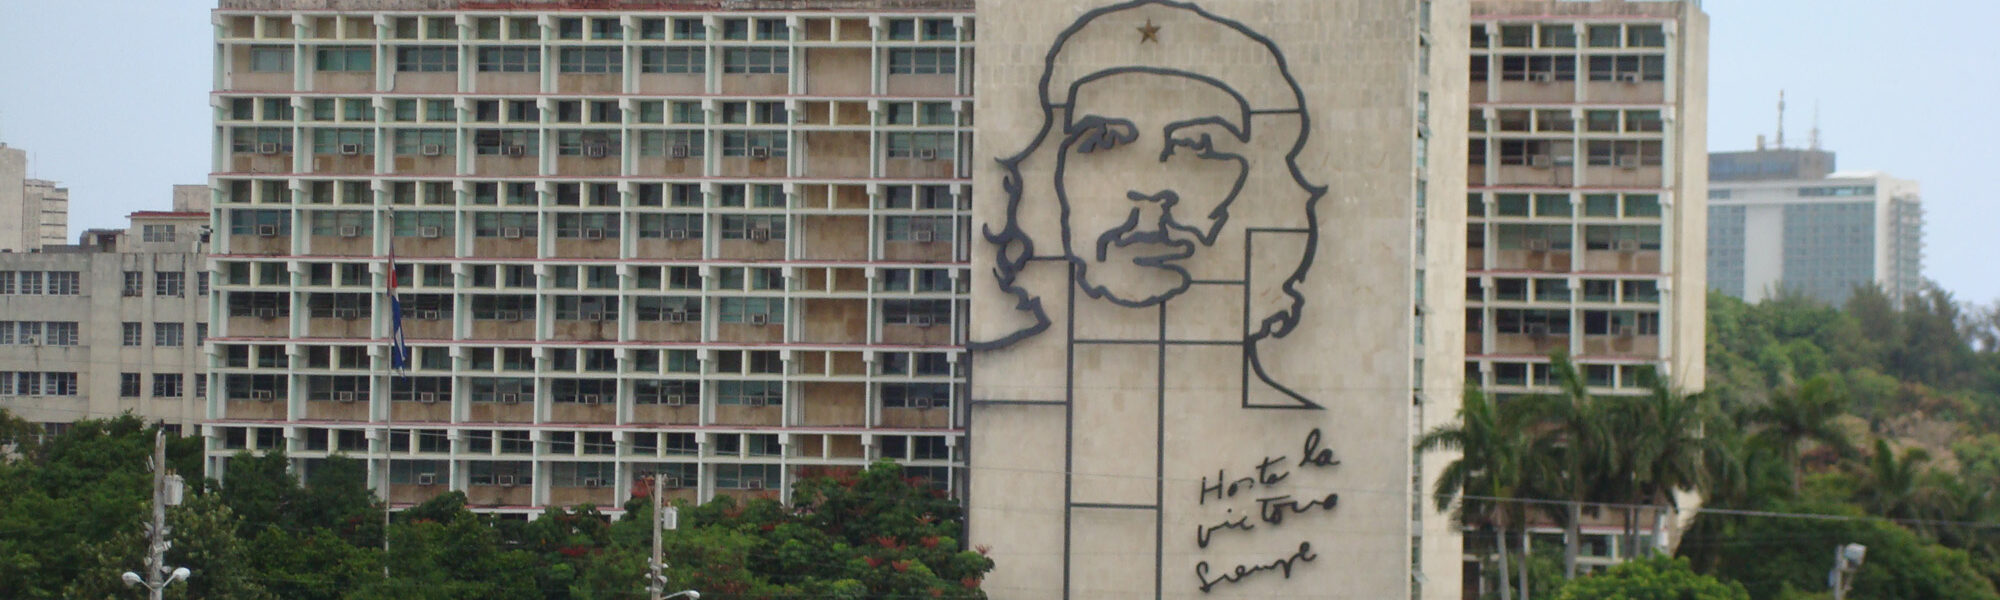 Ministerio del Interior - Havana - Cuba